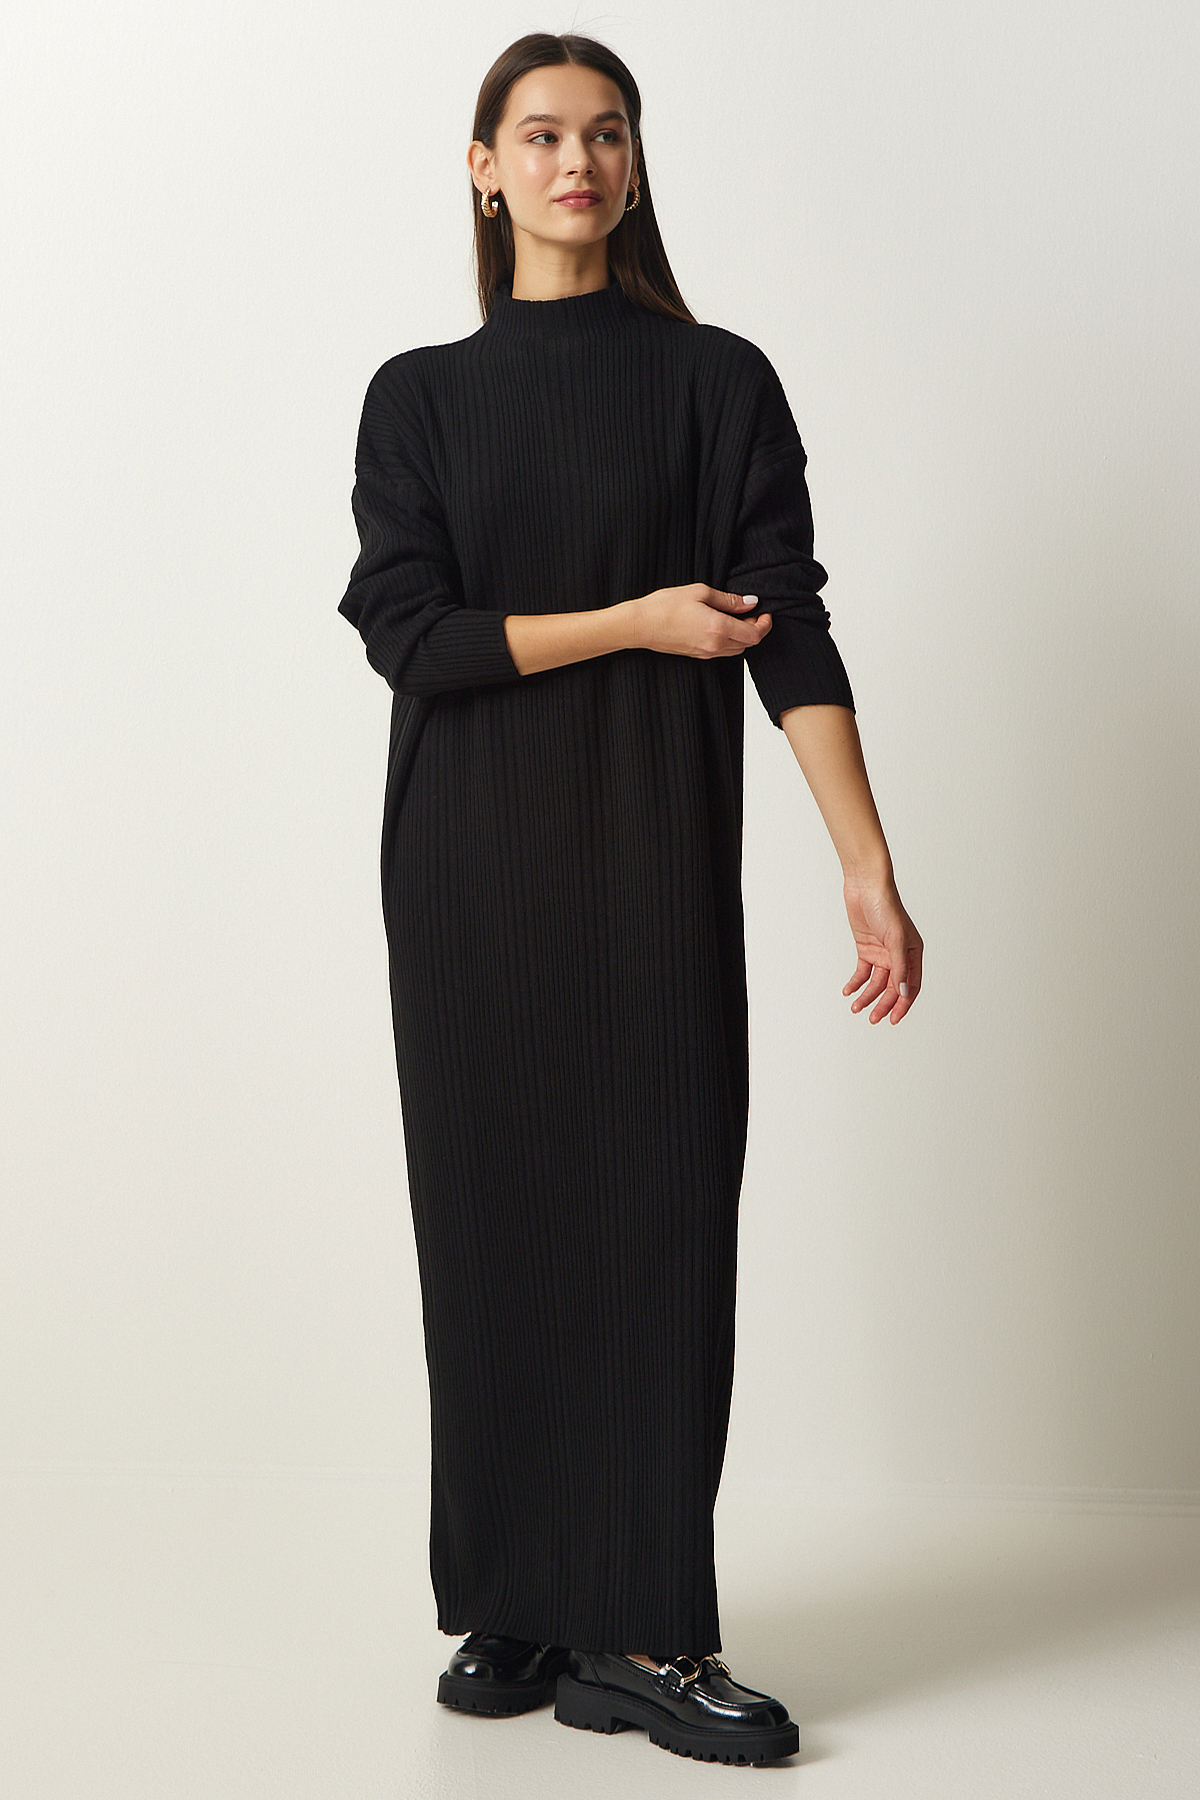 Levně Happiness İstanbul Women's Black High Collar Oversize Knitwear Dress